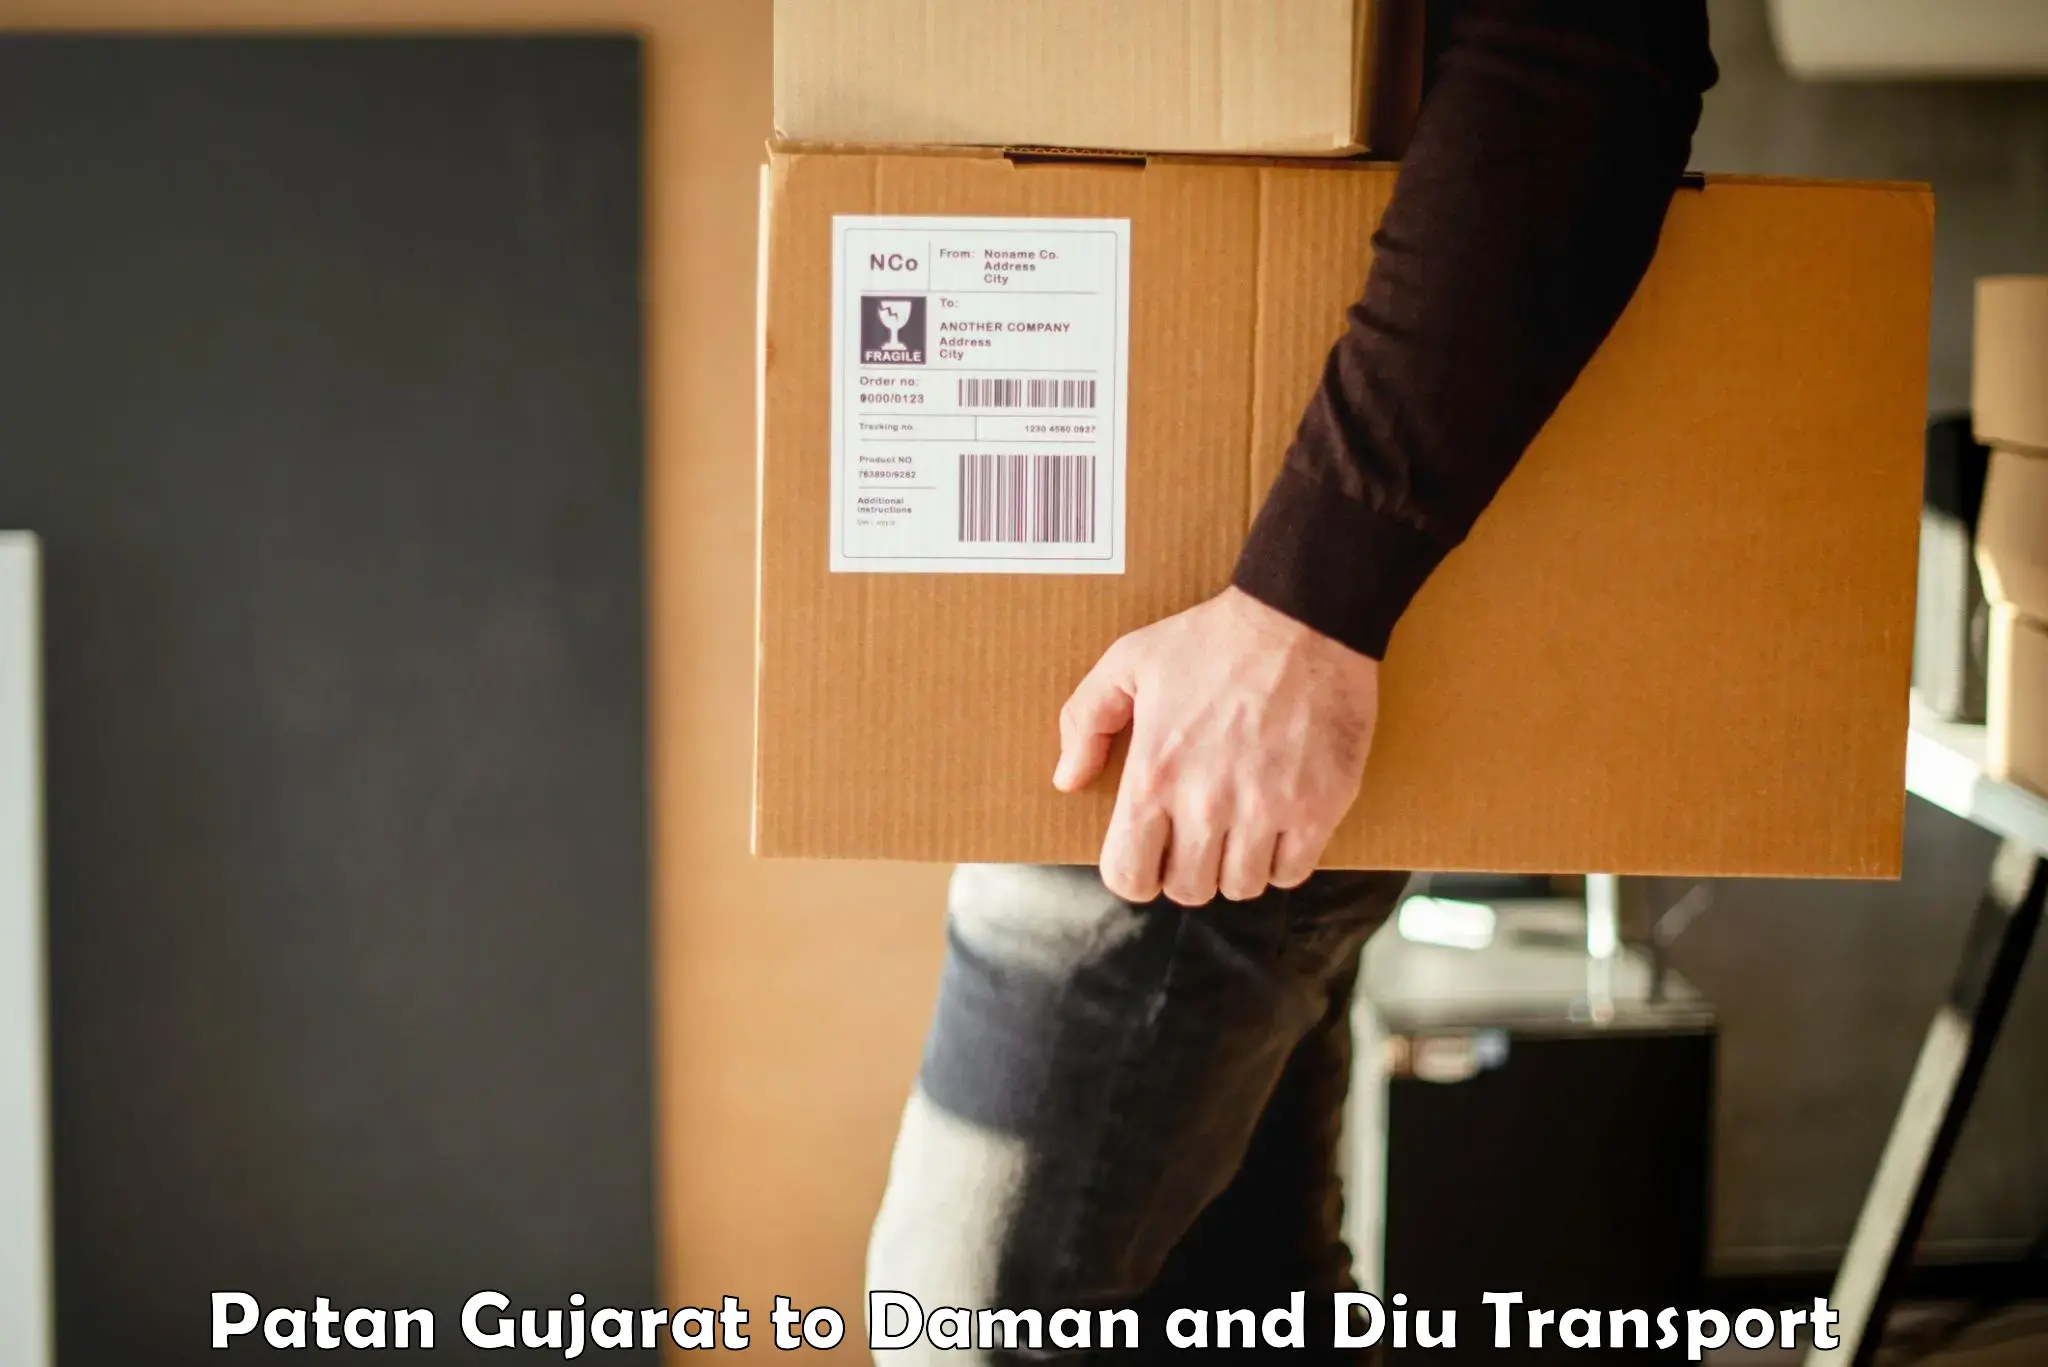 Furniture transport service Patan Gujarat to Daman and Diu